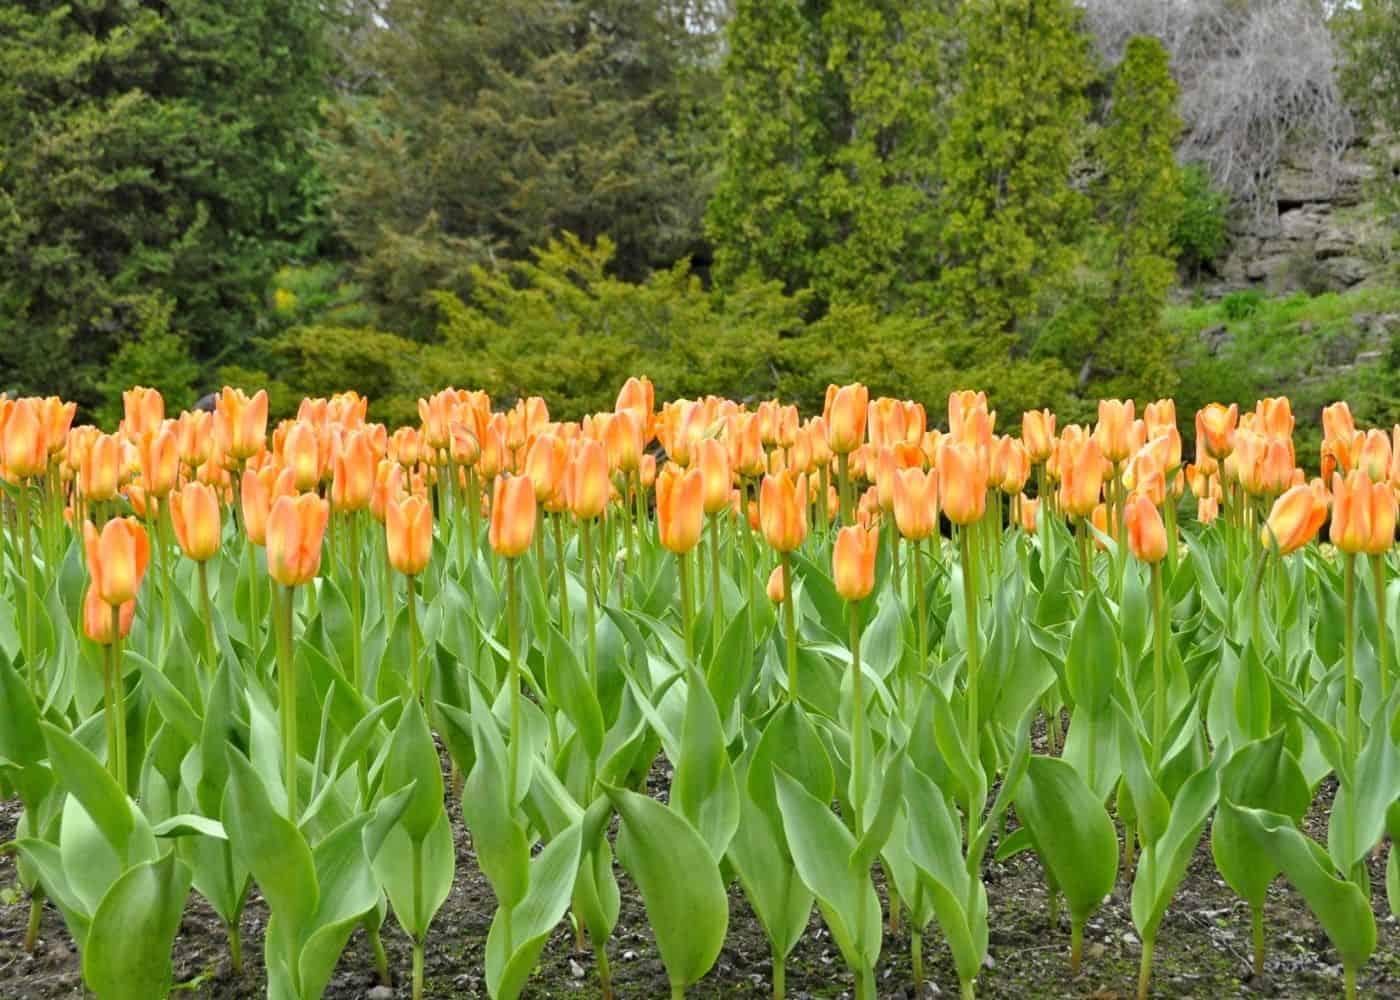 Orange emperor tulips